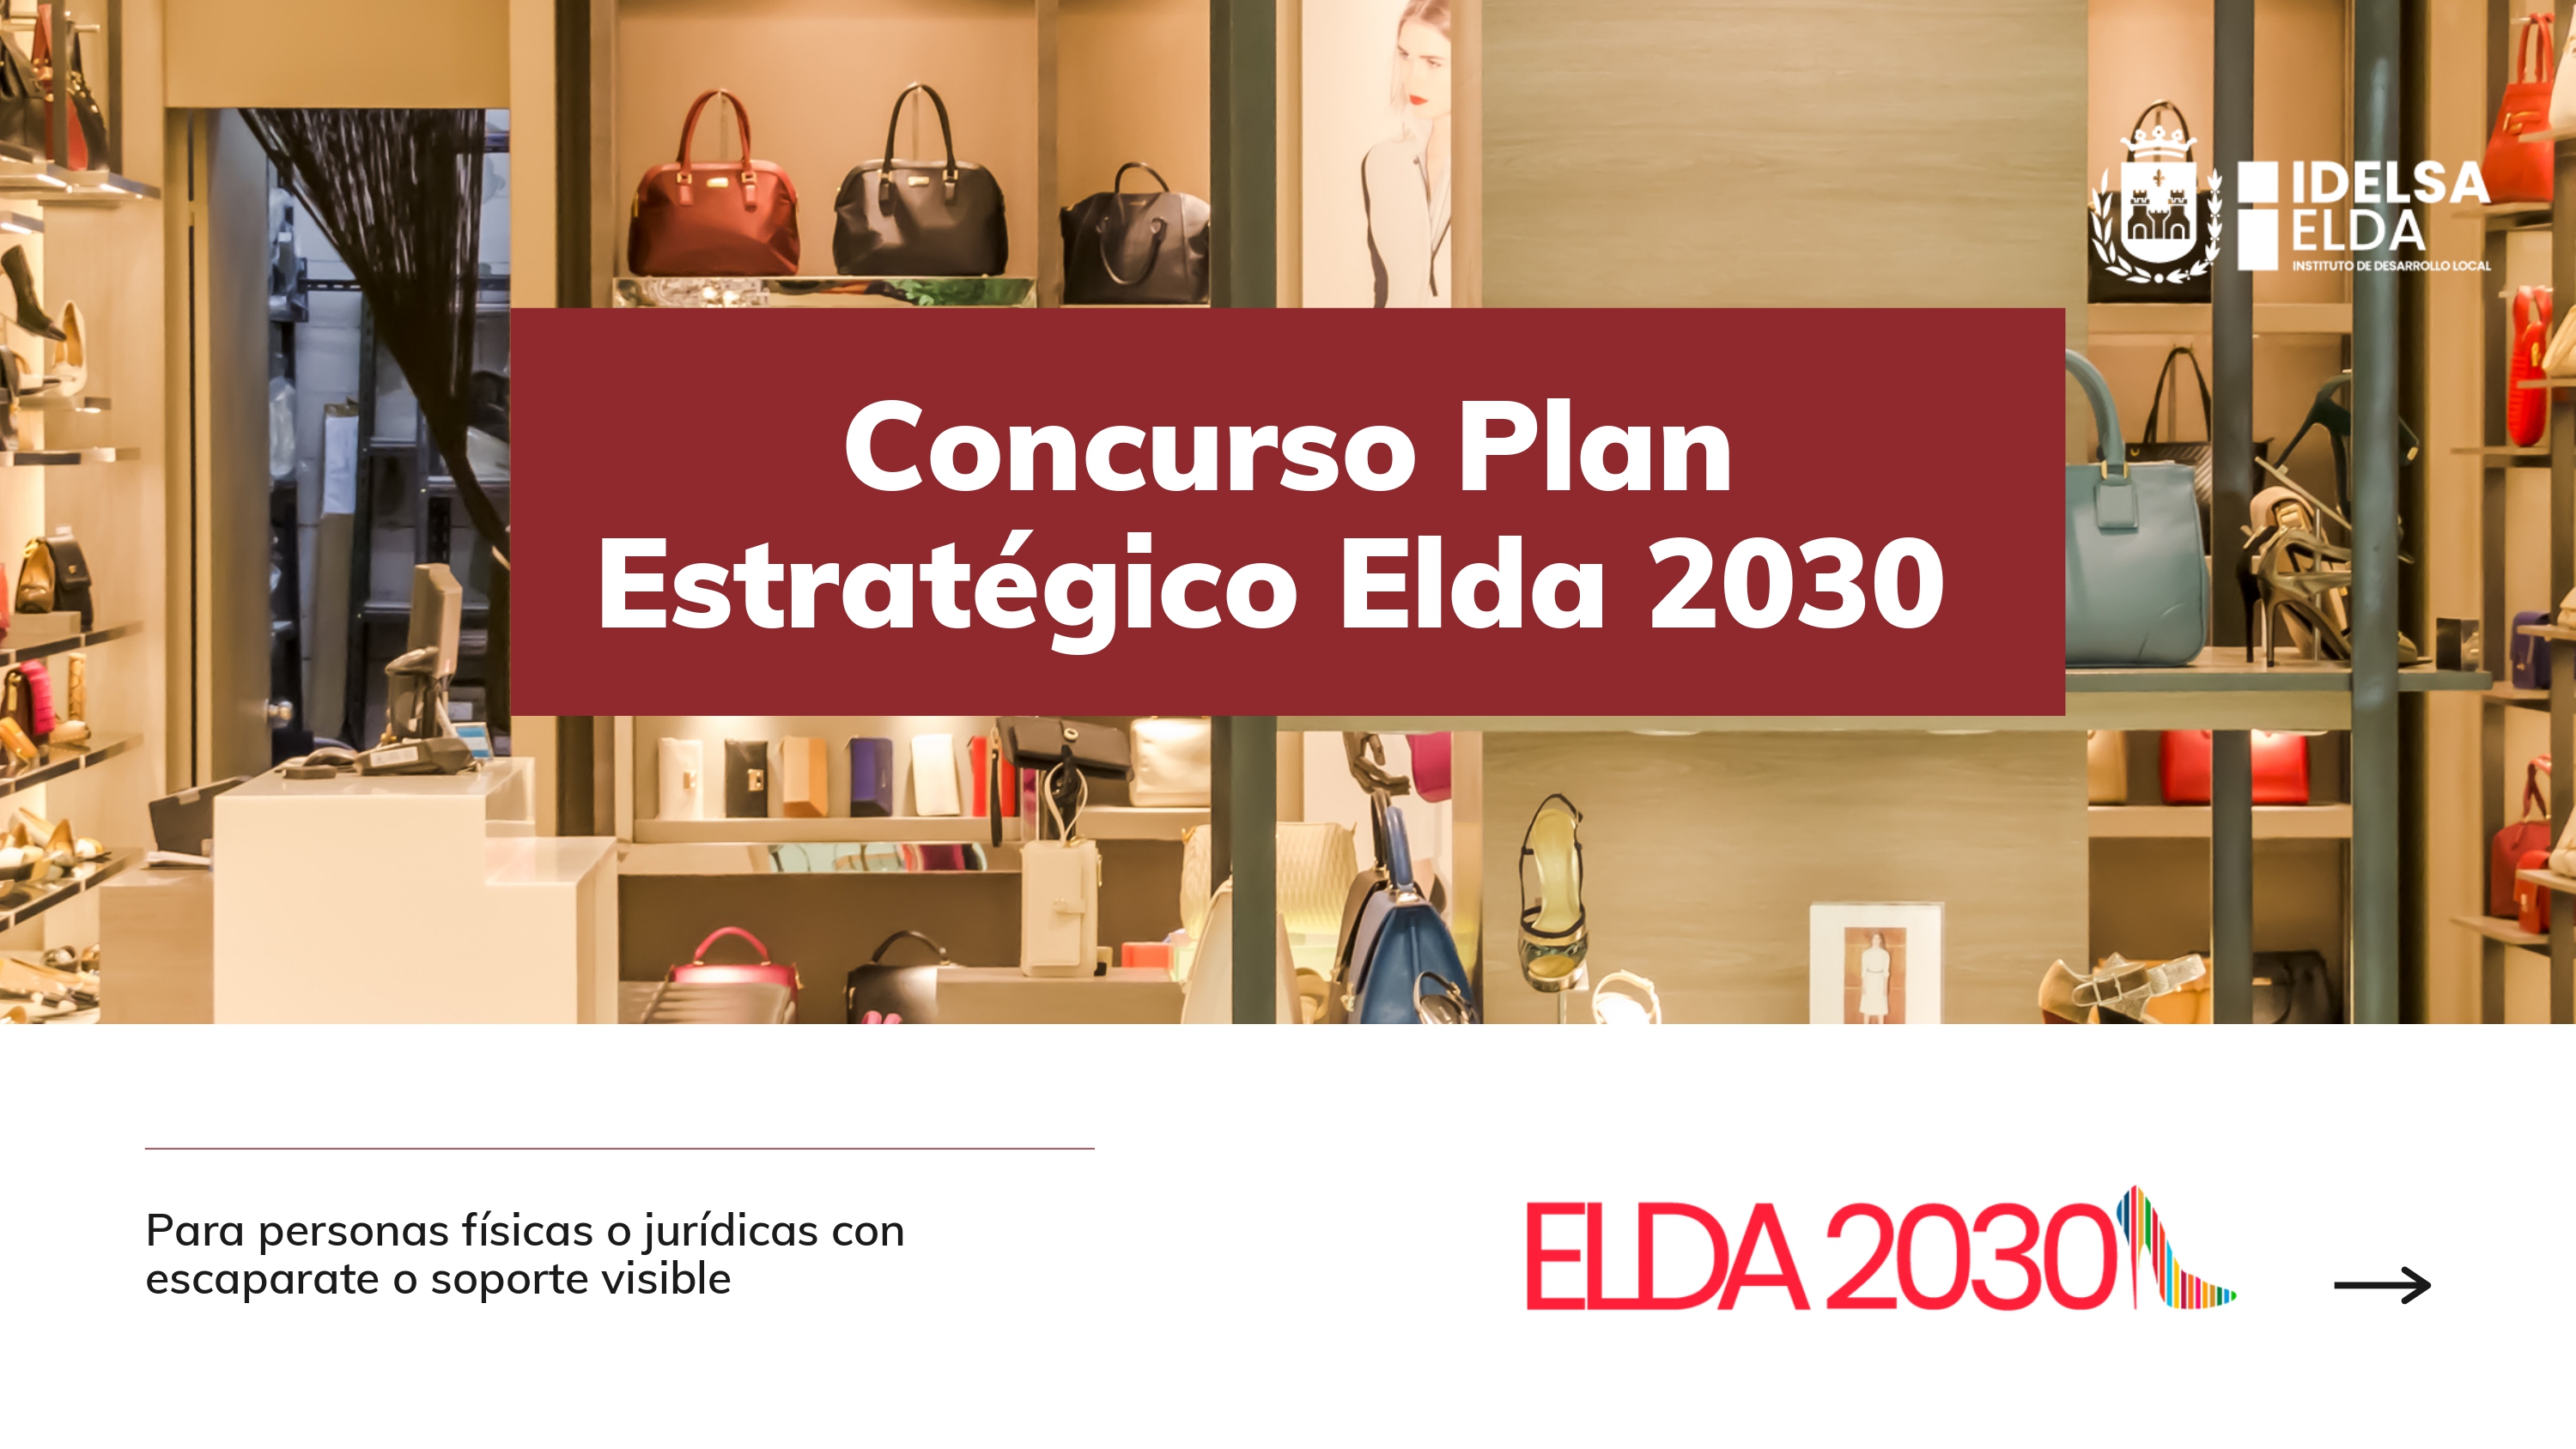 Cerca de medio millar de comercios y negocios eldenses se han inscrito para participar en el Concurso #Elda2030